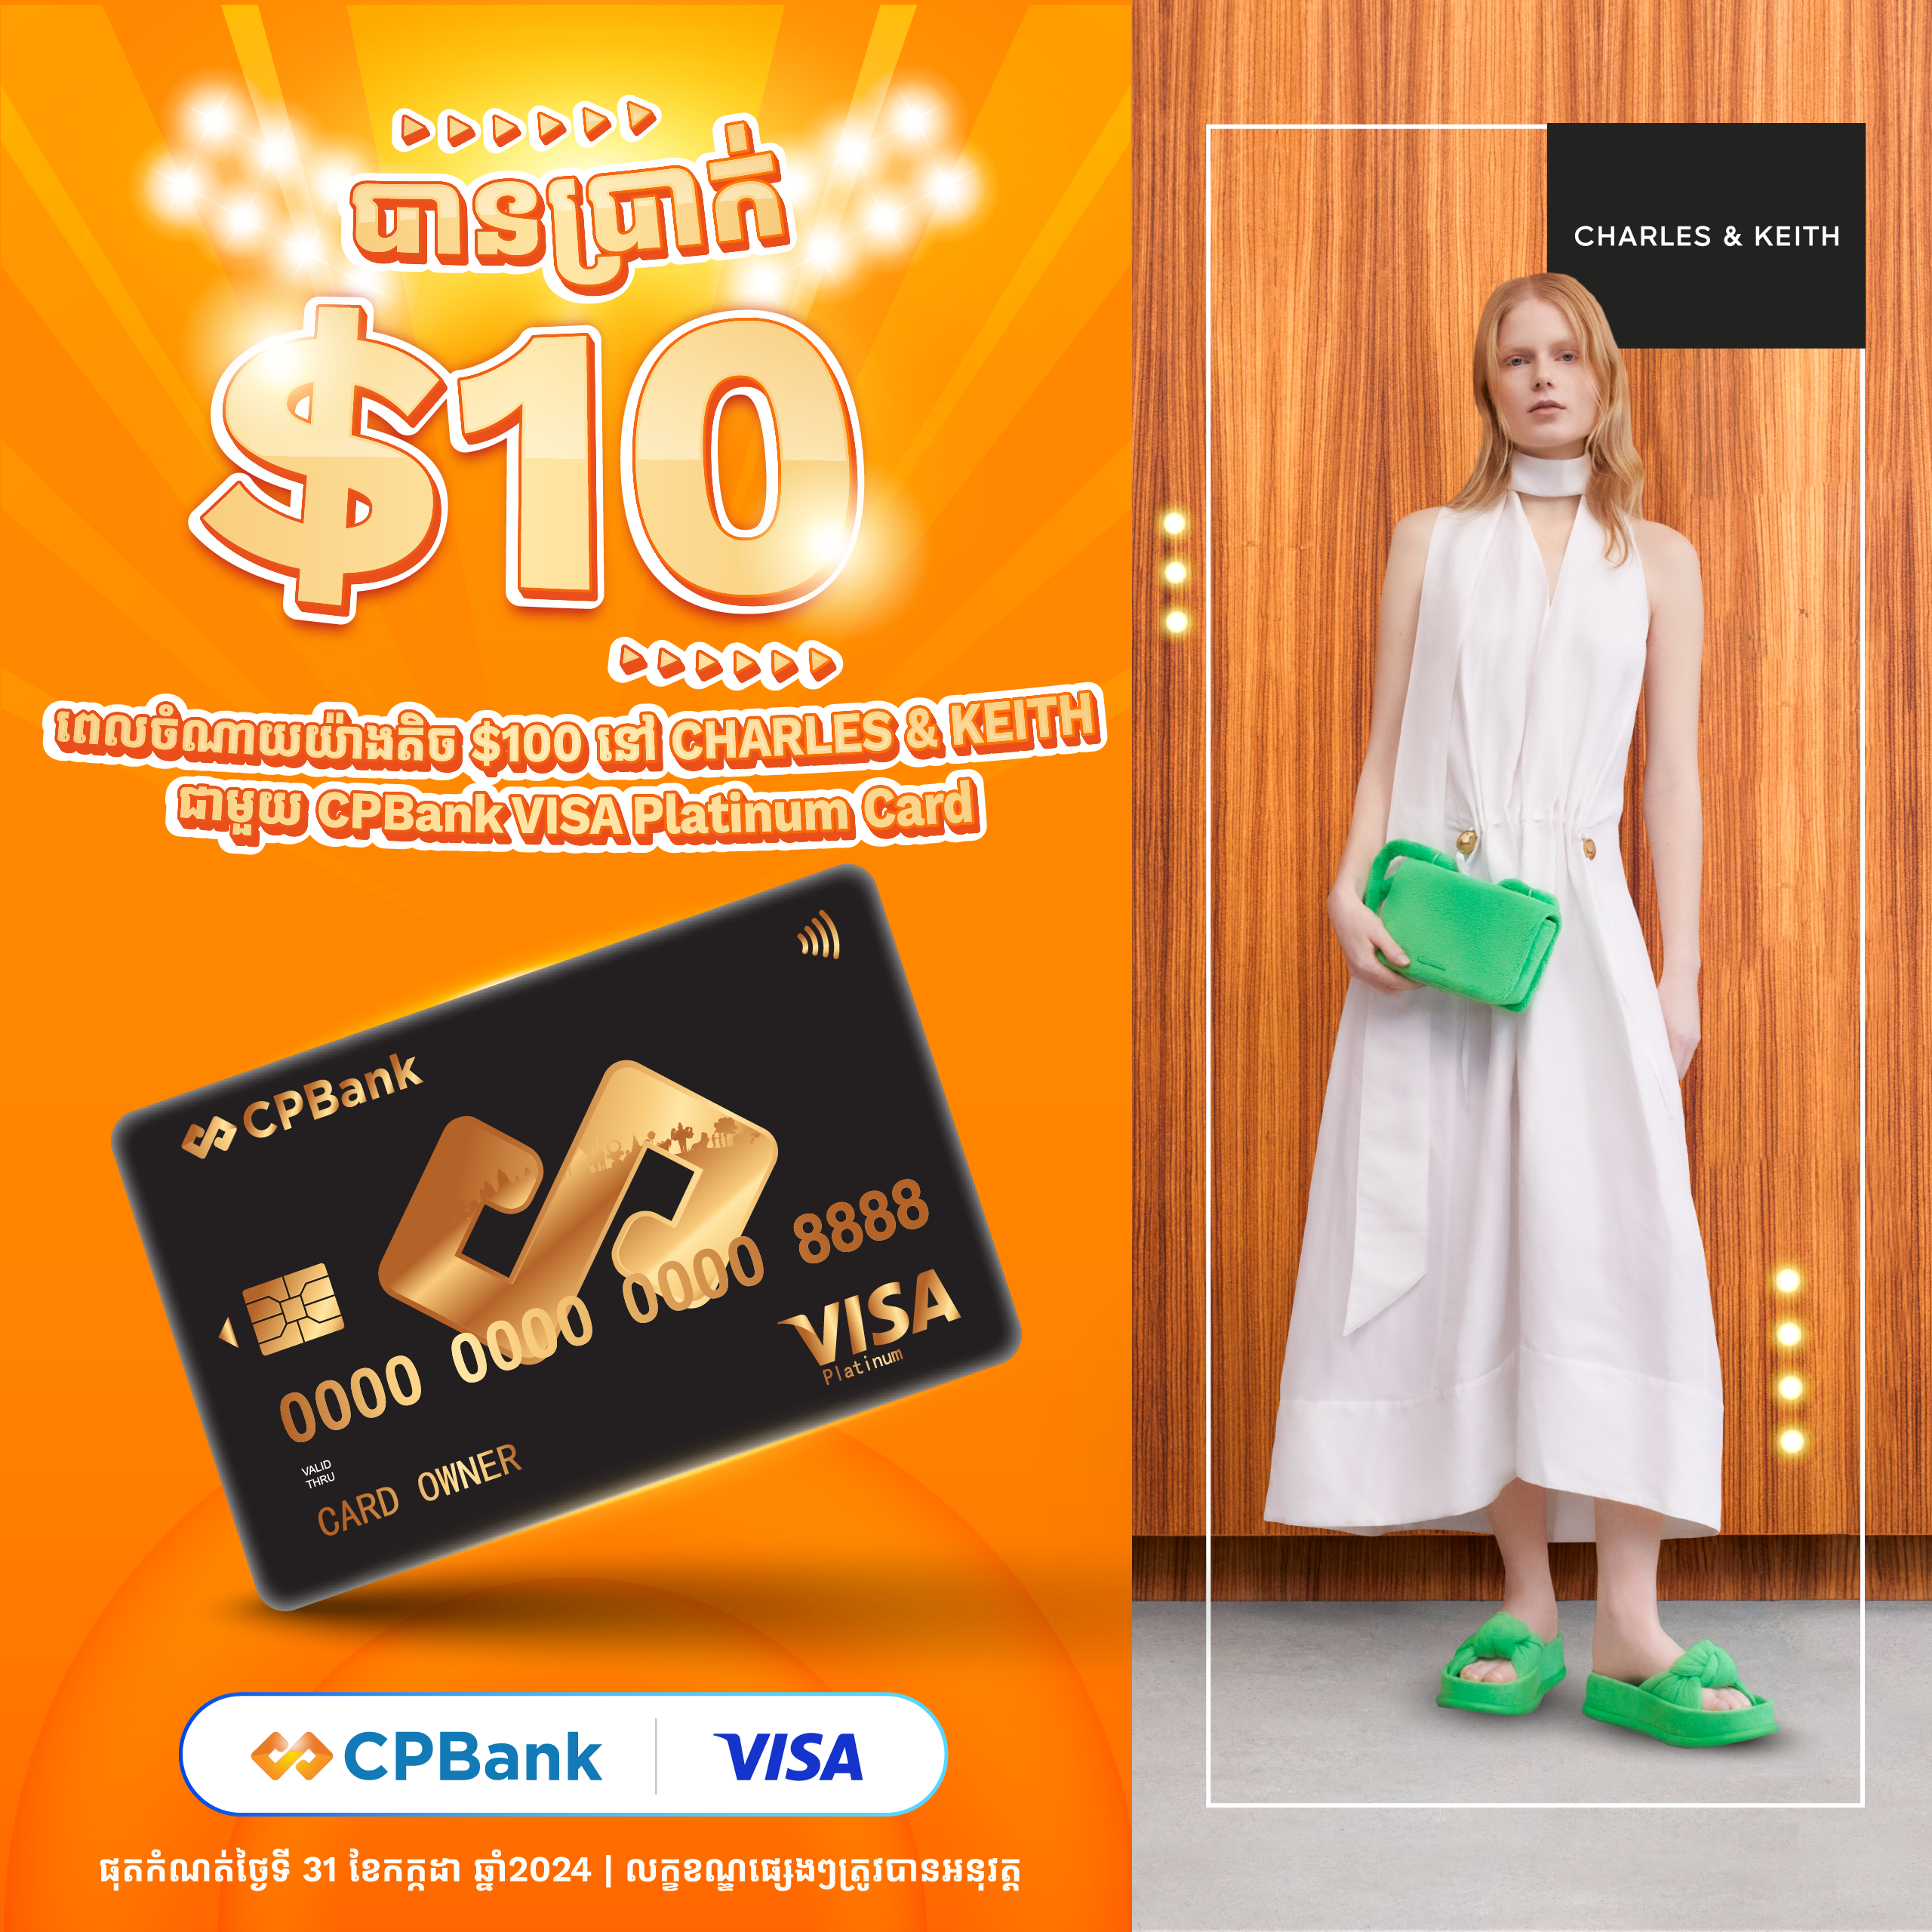 បញ្ចុះតម្លៃ 10ដុល្លារ ពី CHARLES & KEITH ជាមួយប័ណ្ណឥណទាន CPBank VISA​ Platinum​